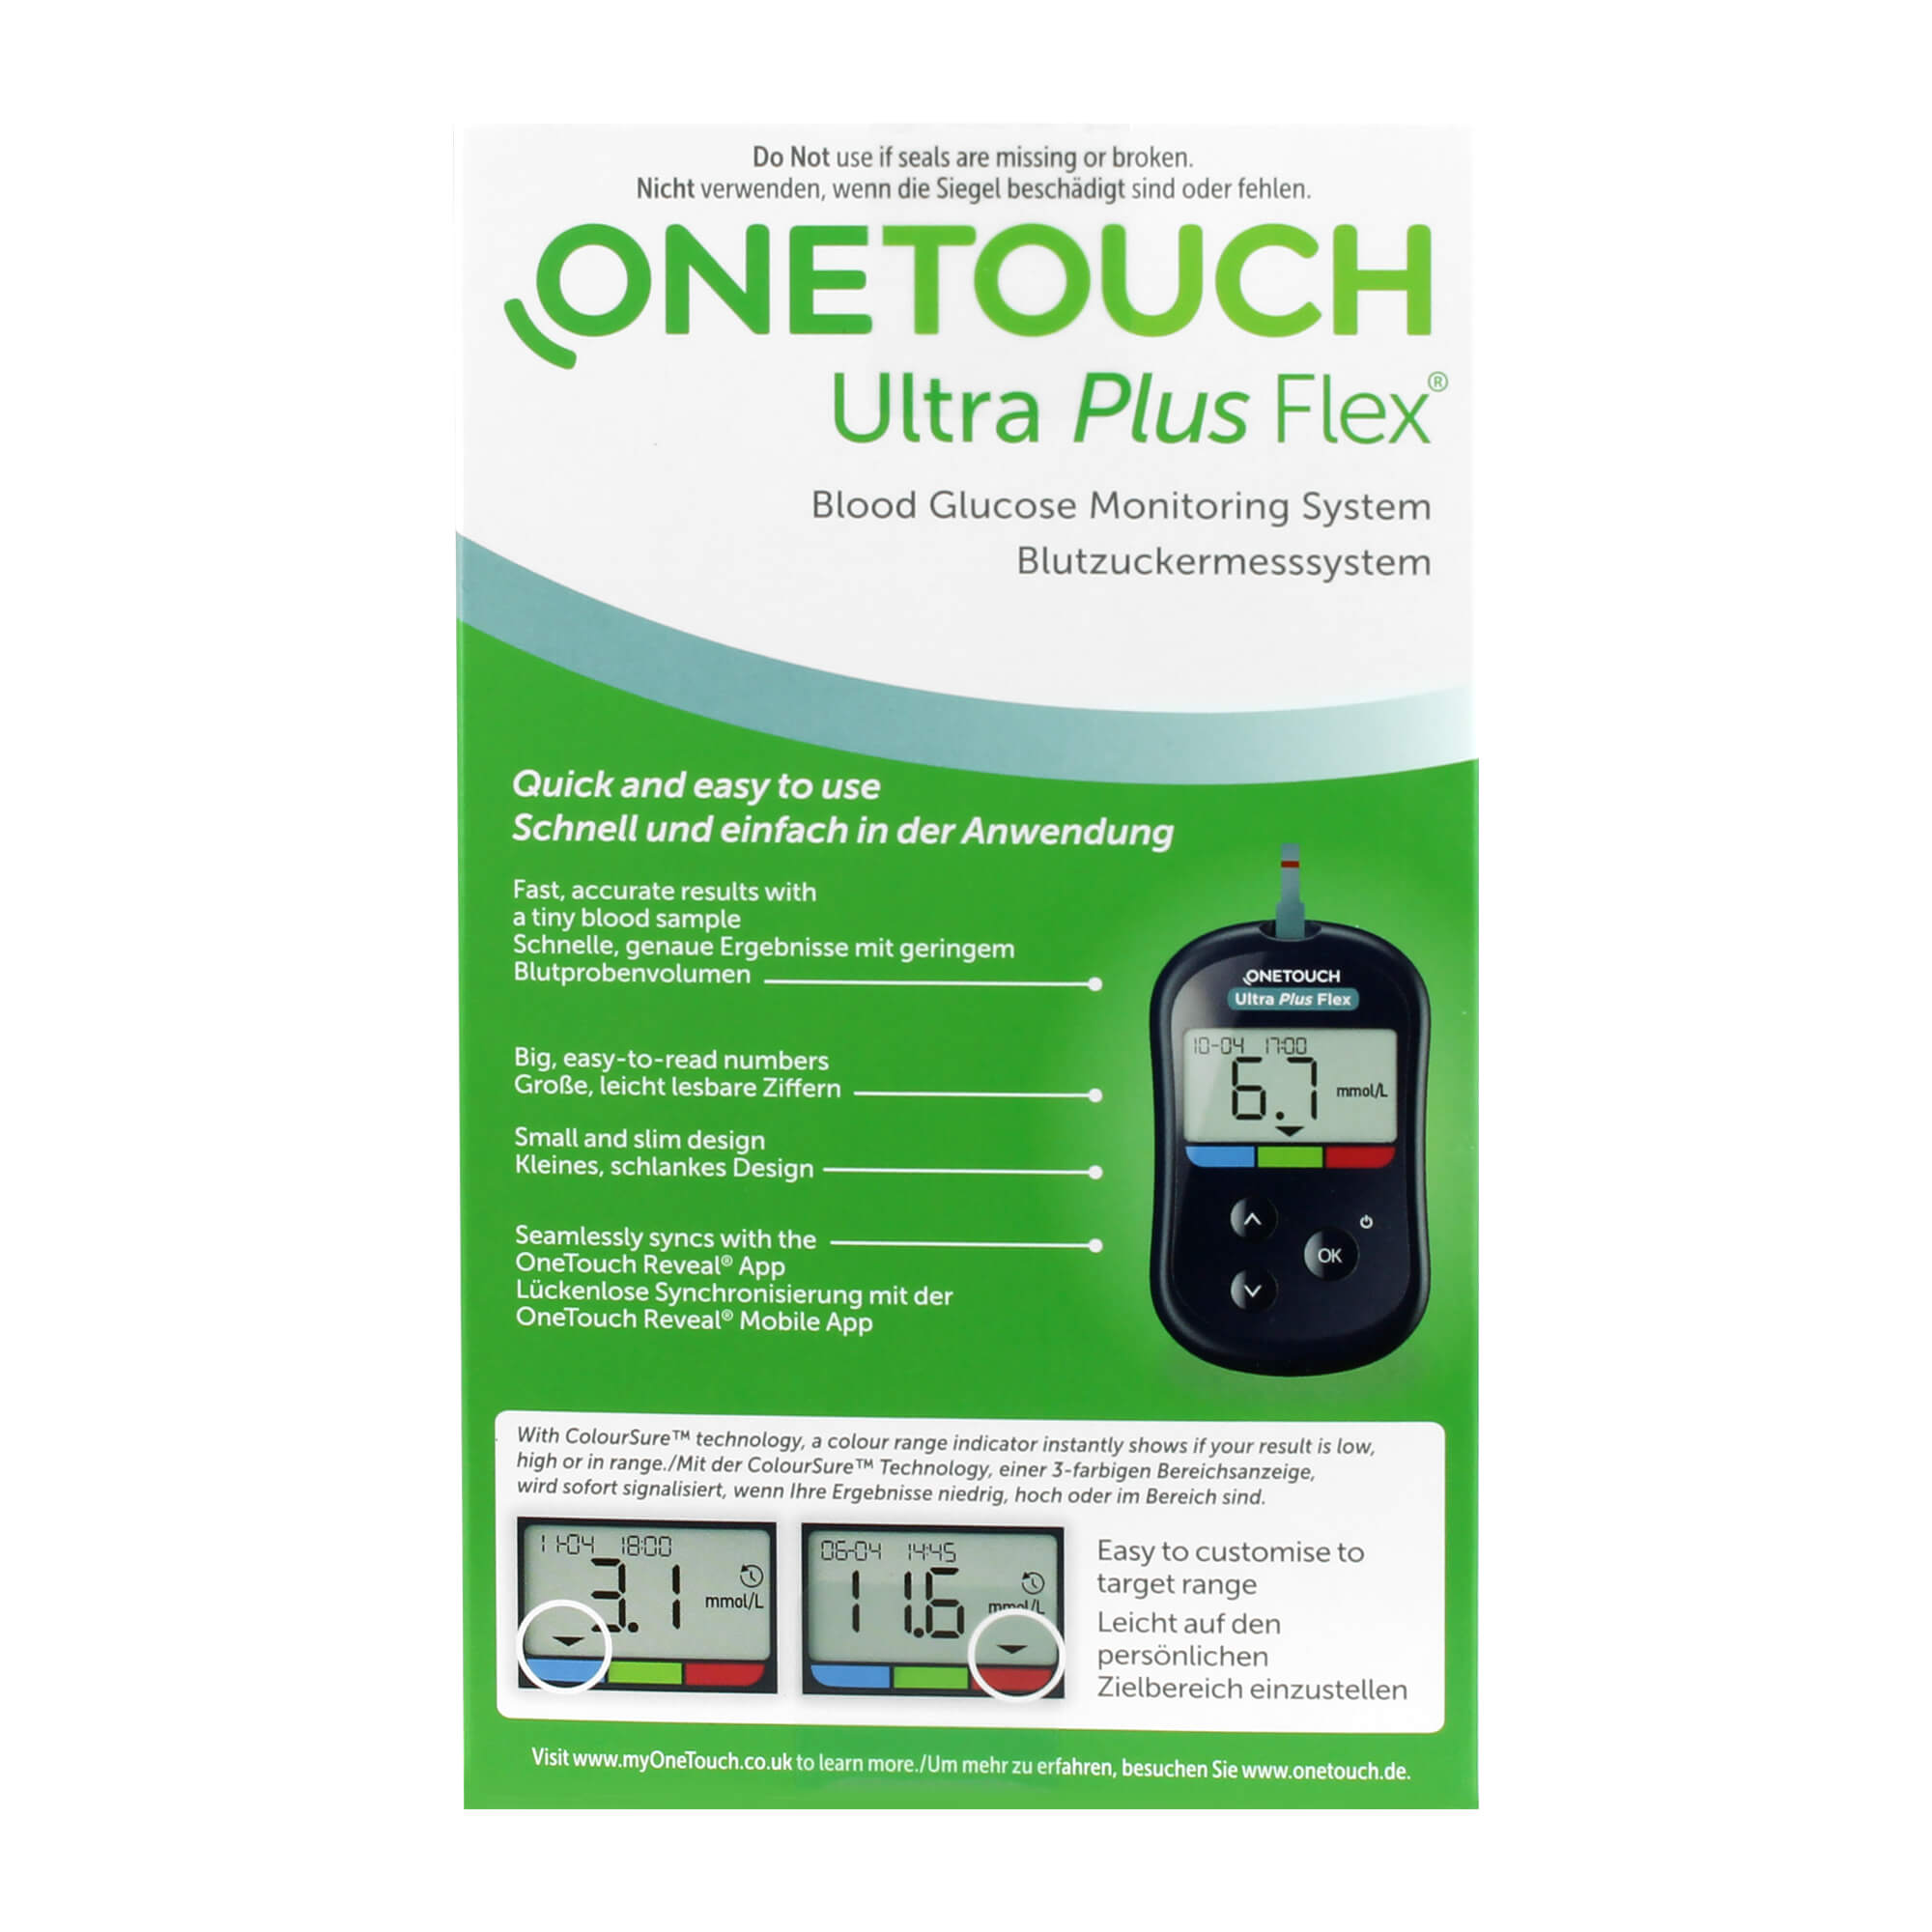 One Touch Ultra Plus Flex Blutzuckermessgerät mmol/L